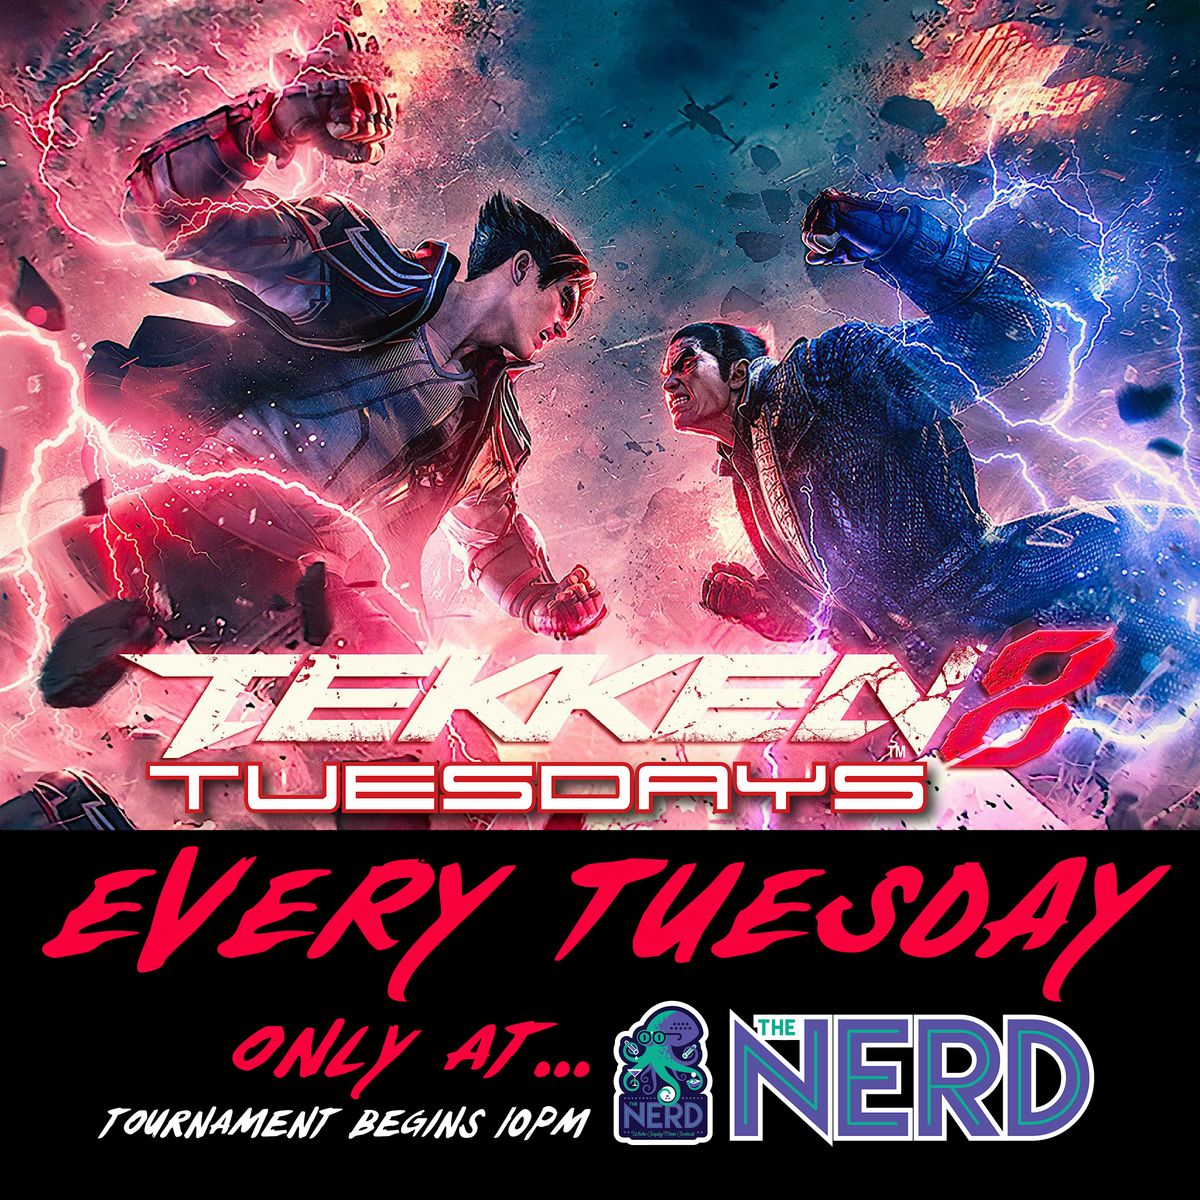 Tekken Tuesdays at The Nerd